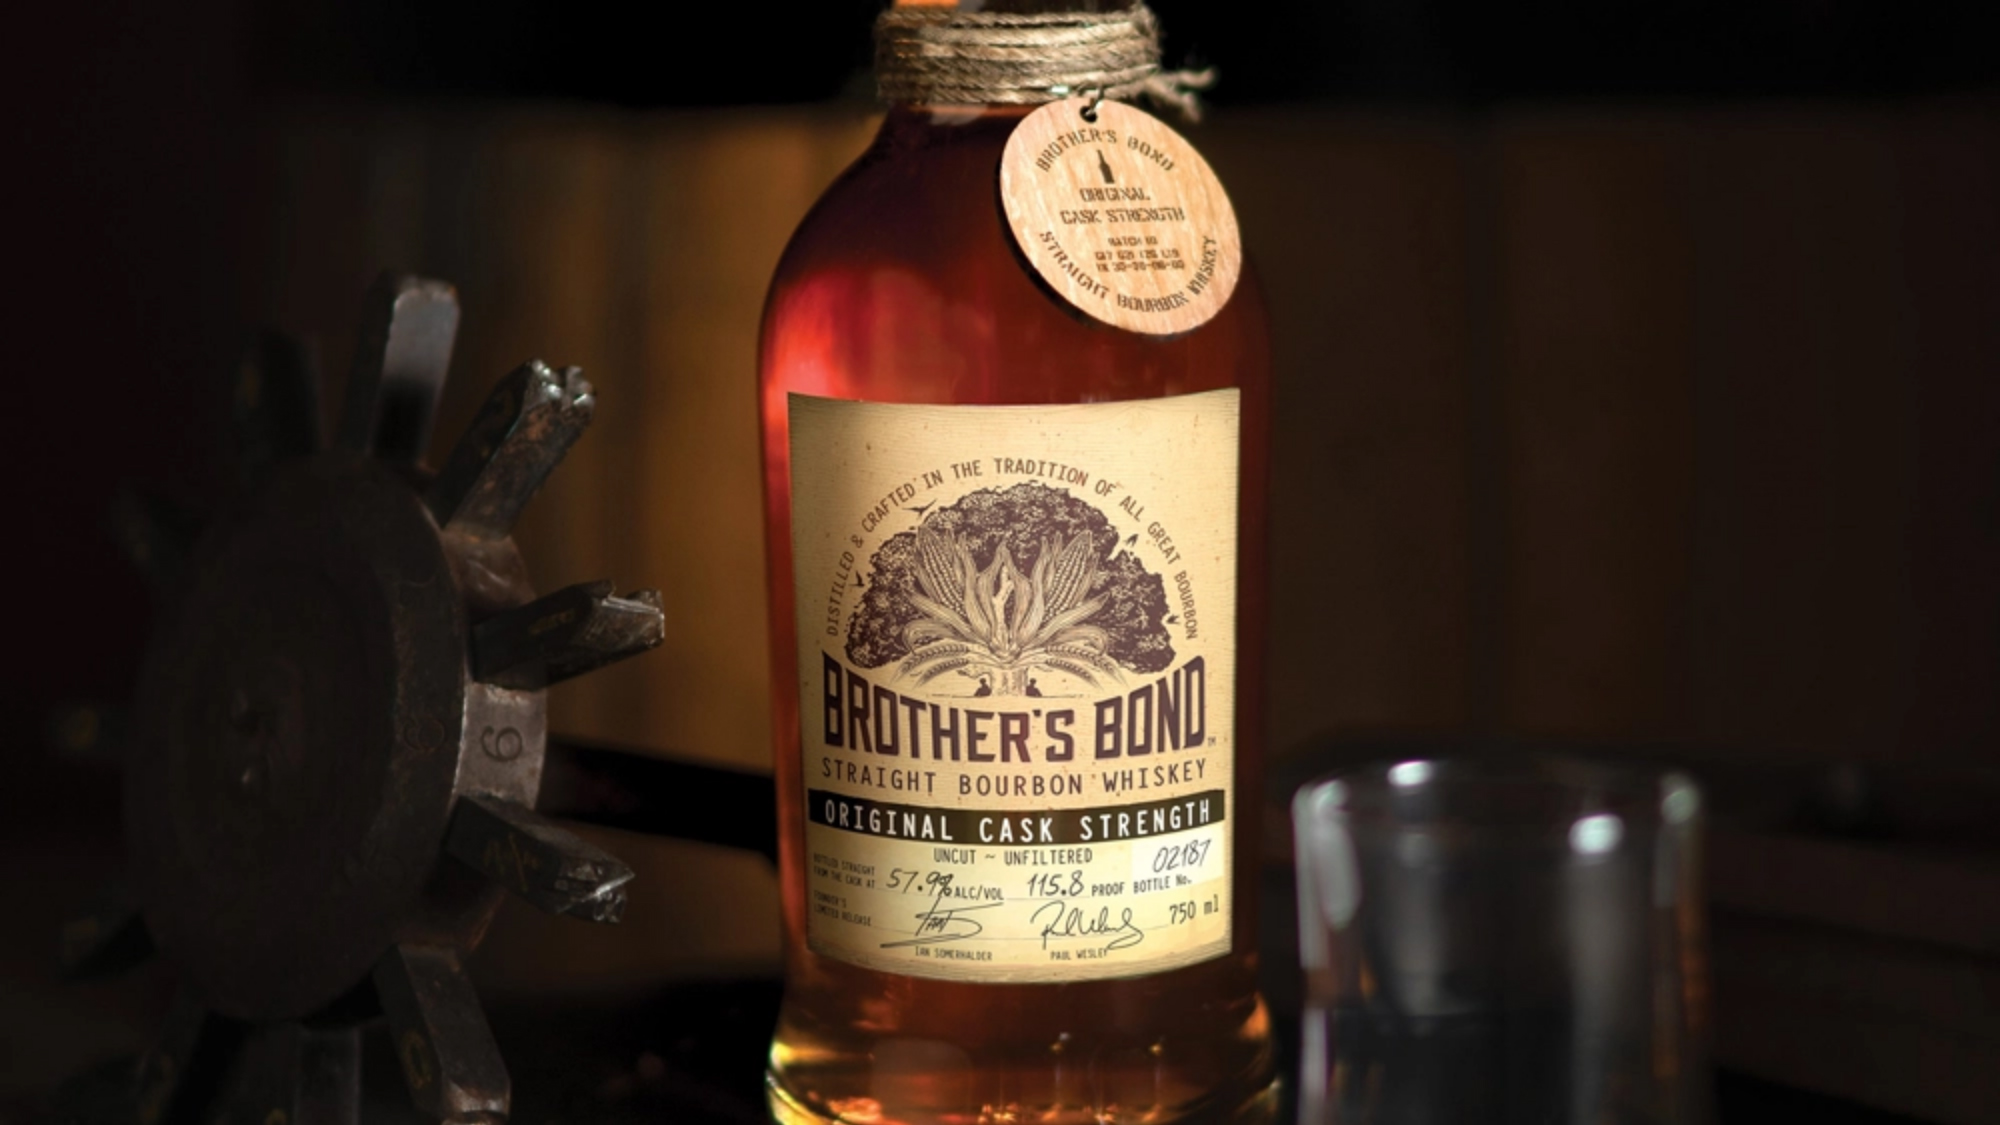 Brother's Bond Original Cask Strength Bourbon